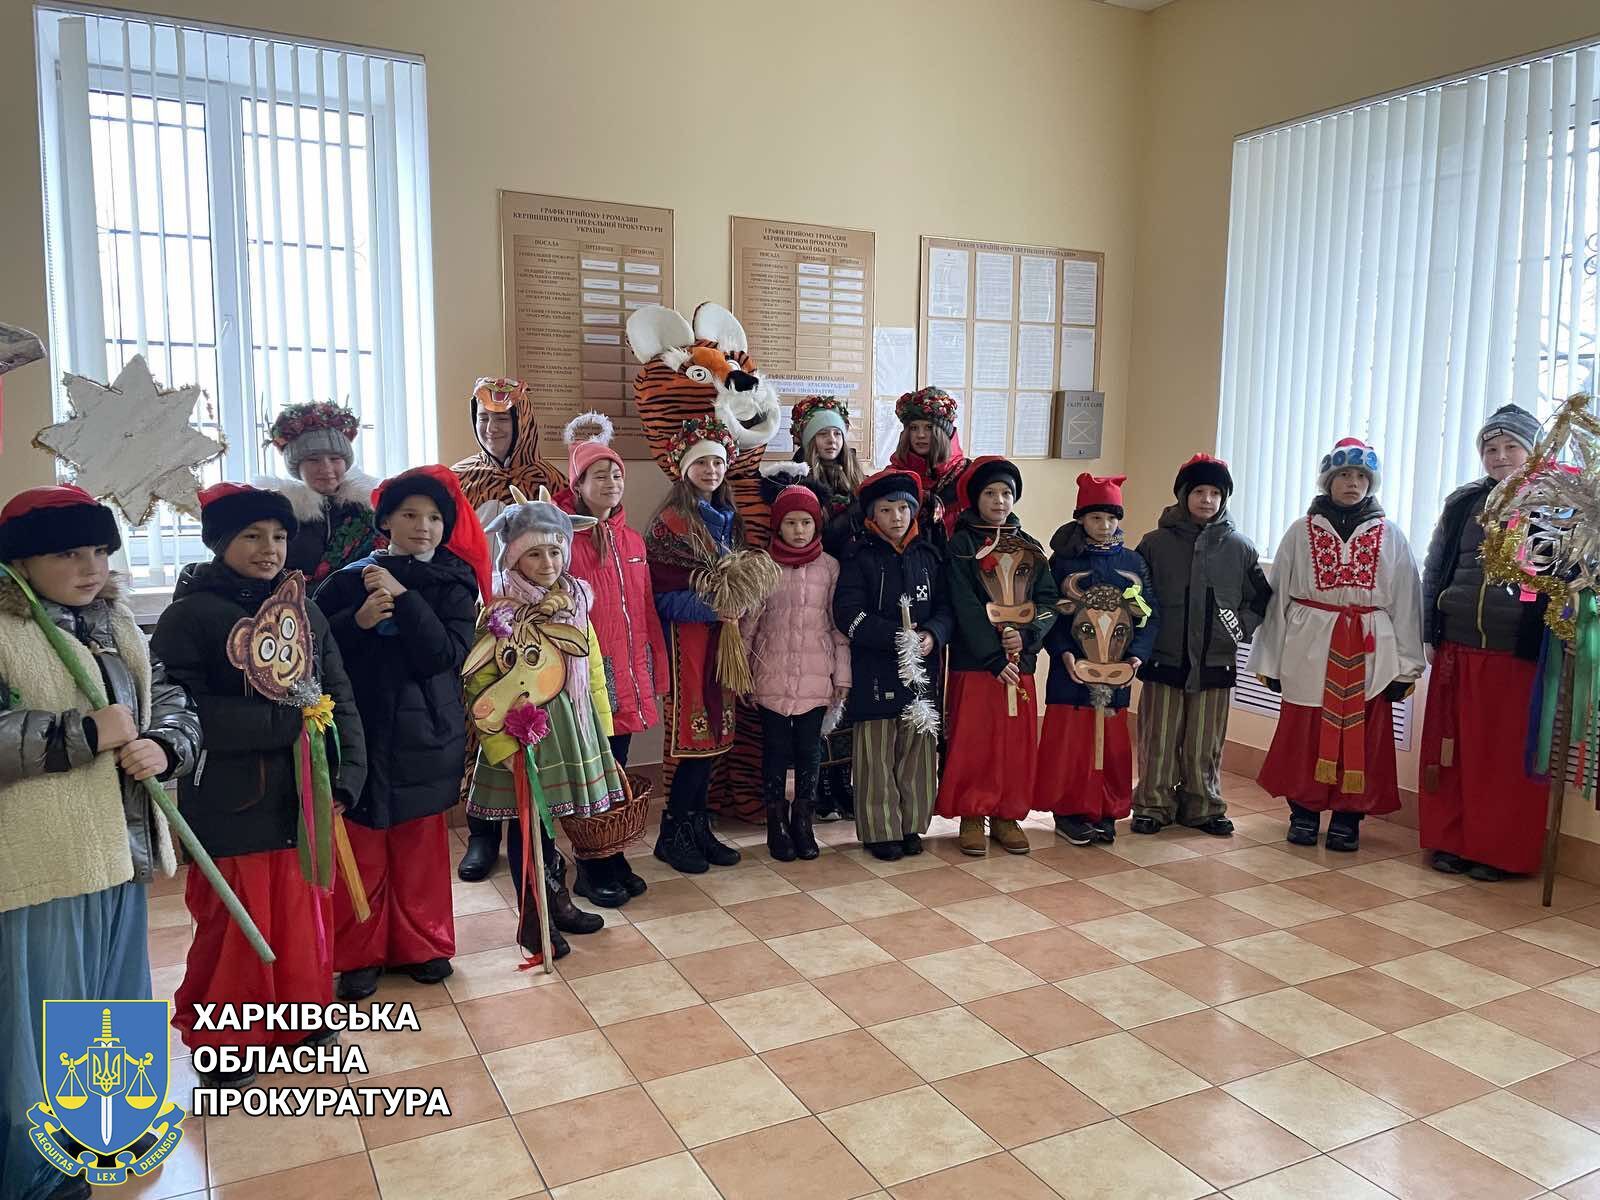 Колядували і співали — діти привітали прокурорів з новорічними святами (ФОТО)